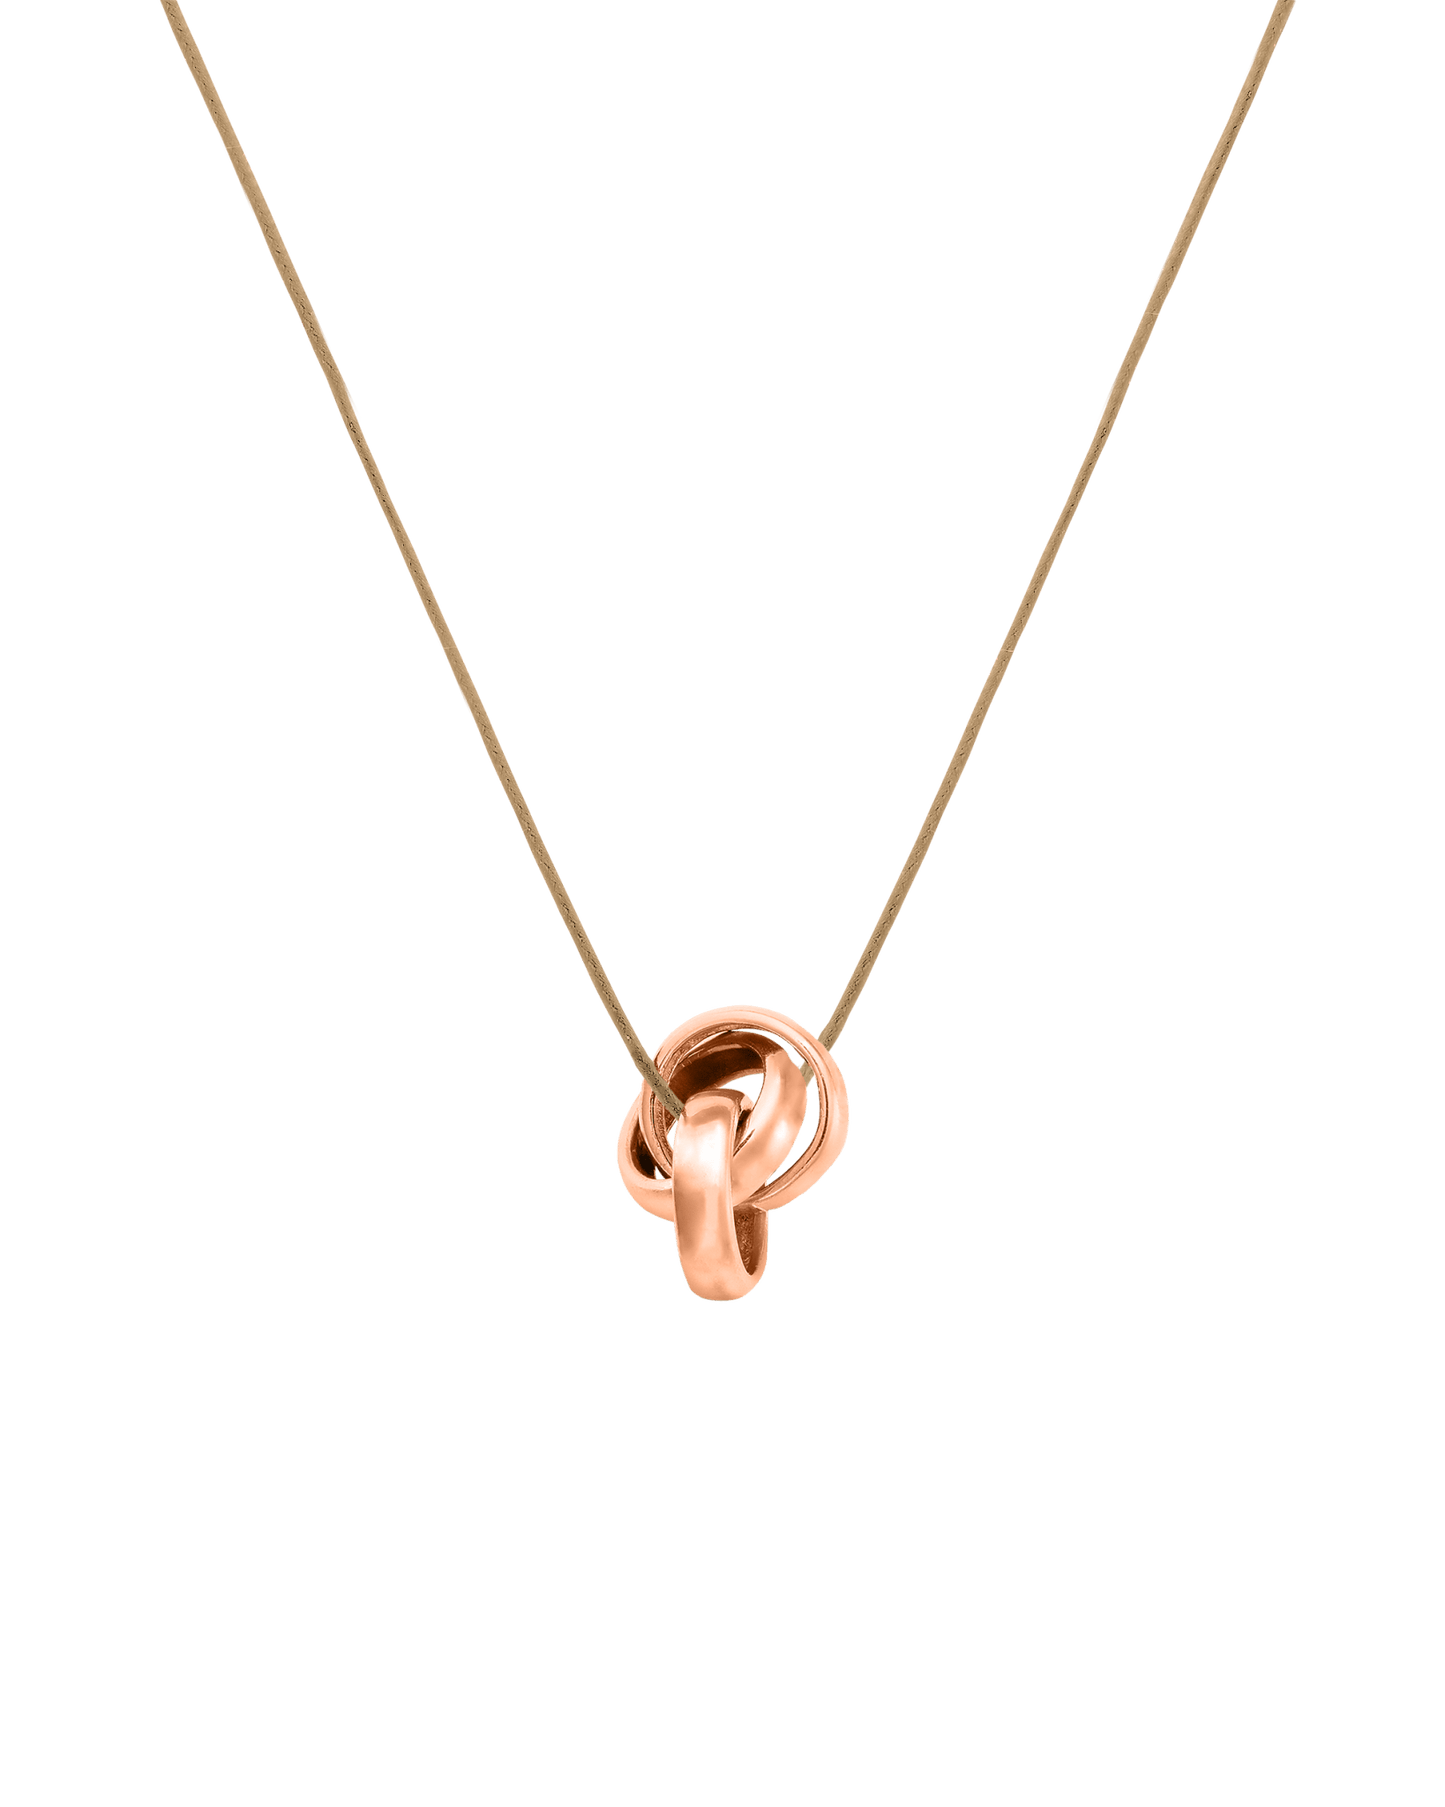 Engravable Links Necklace - 14K Rose Gold Necklaces 14K Solid Gold 3 Camel 